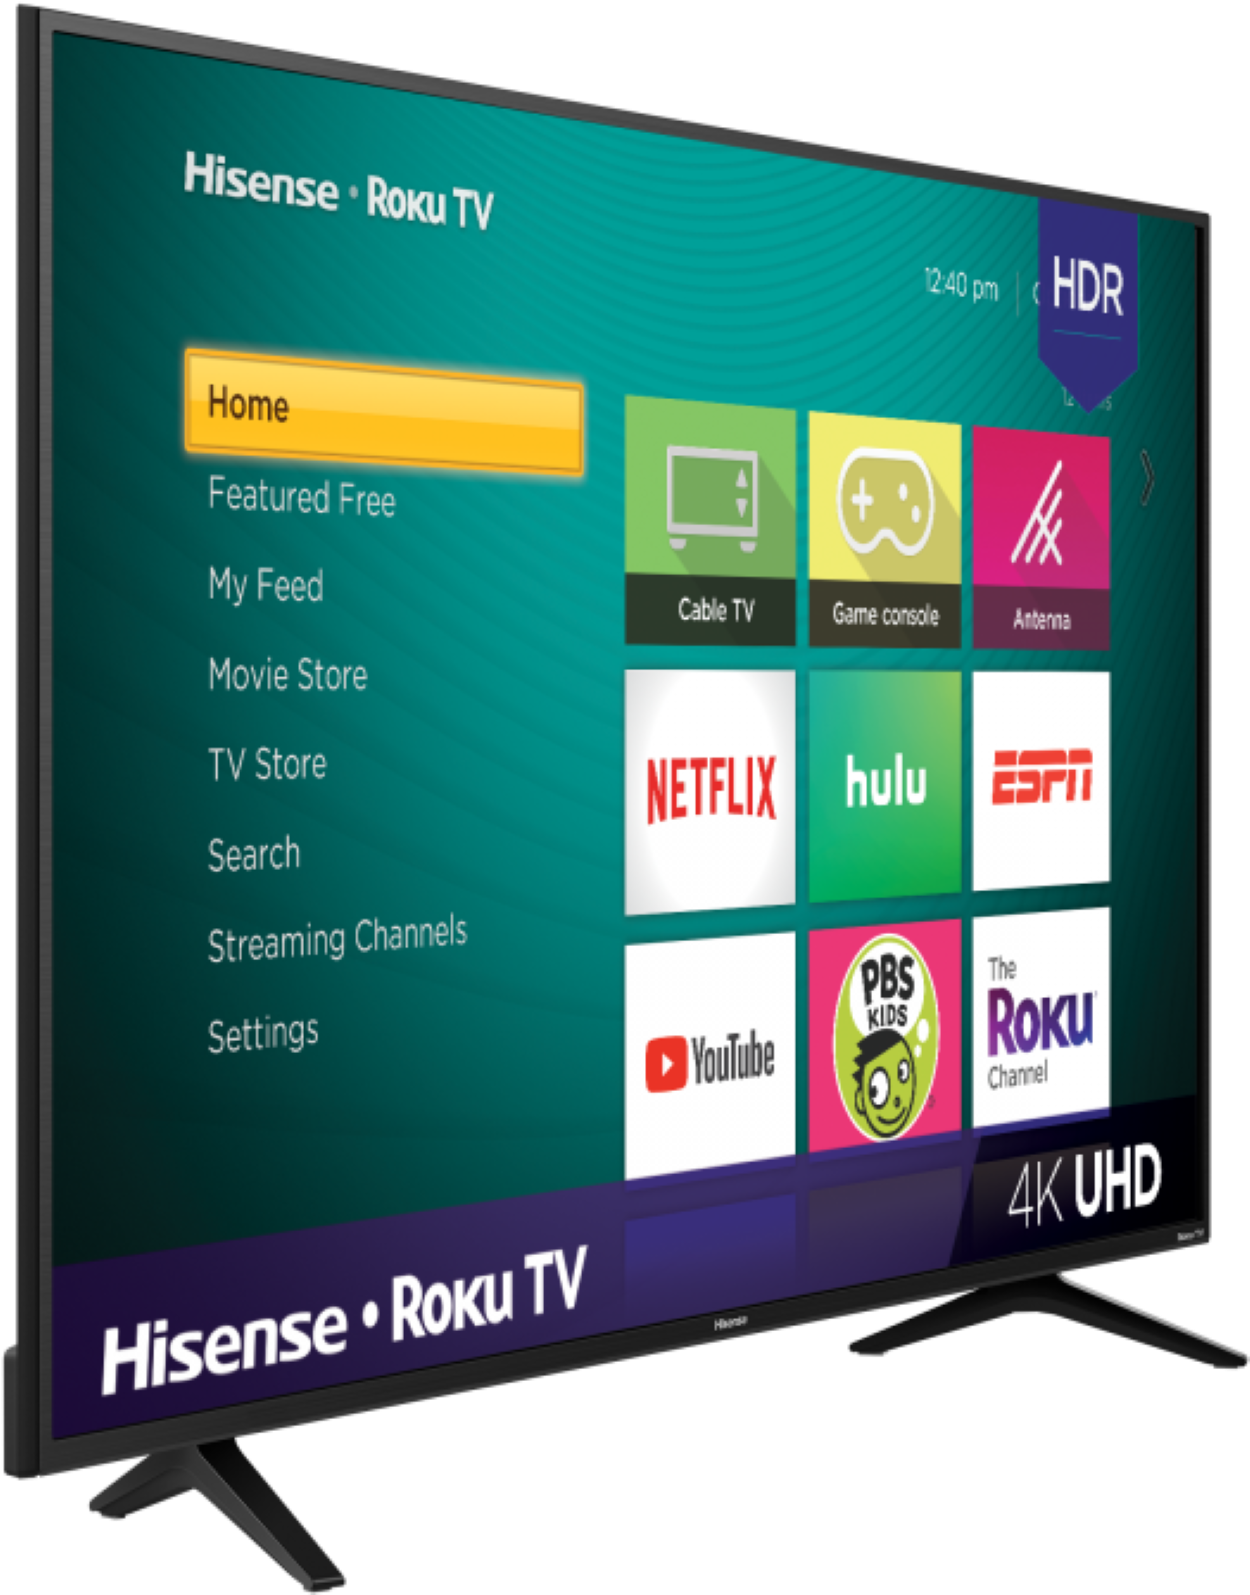 A Hisense Roku Smart TV